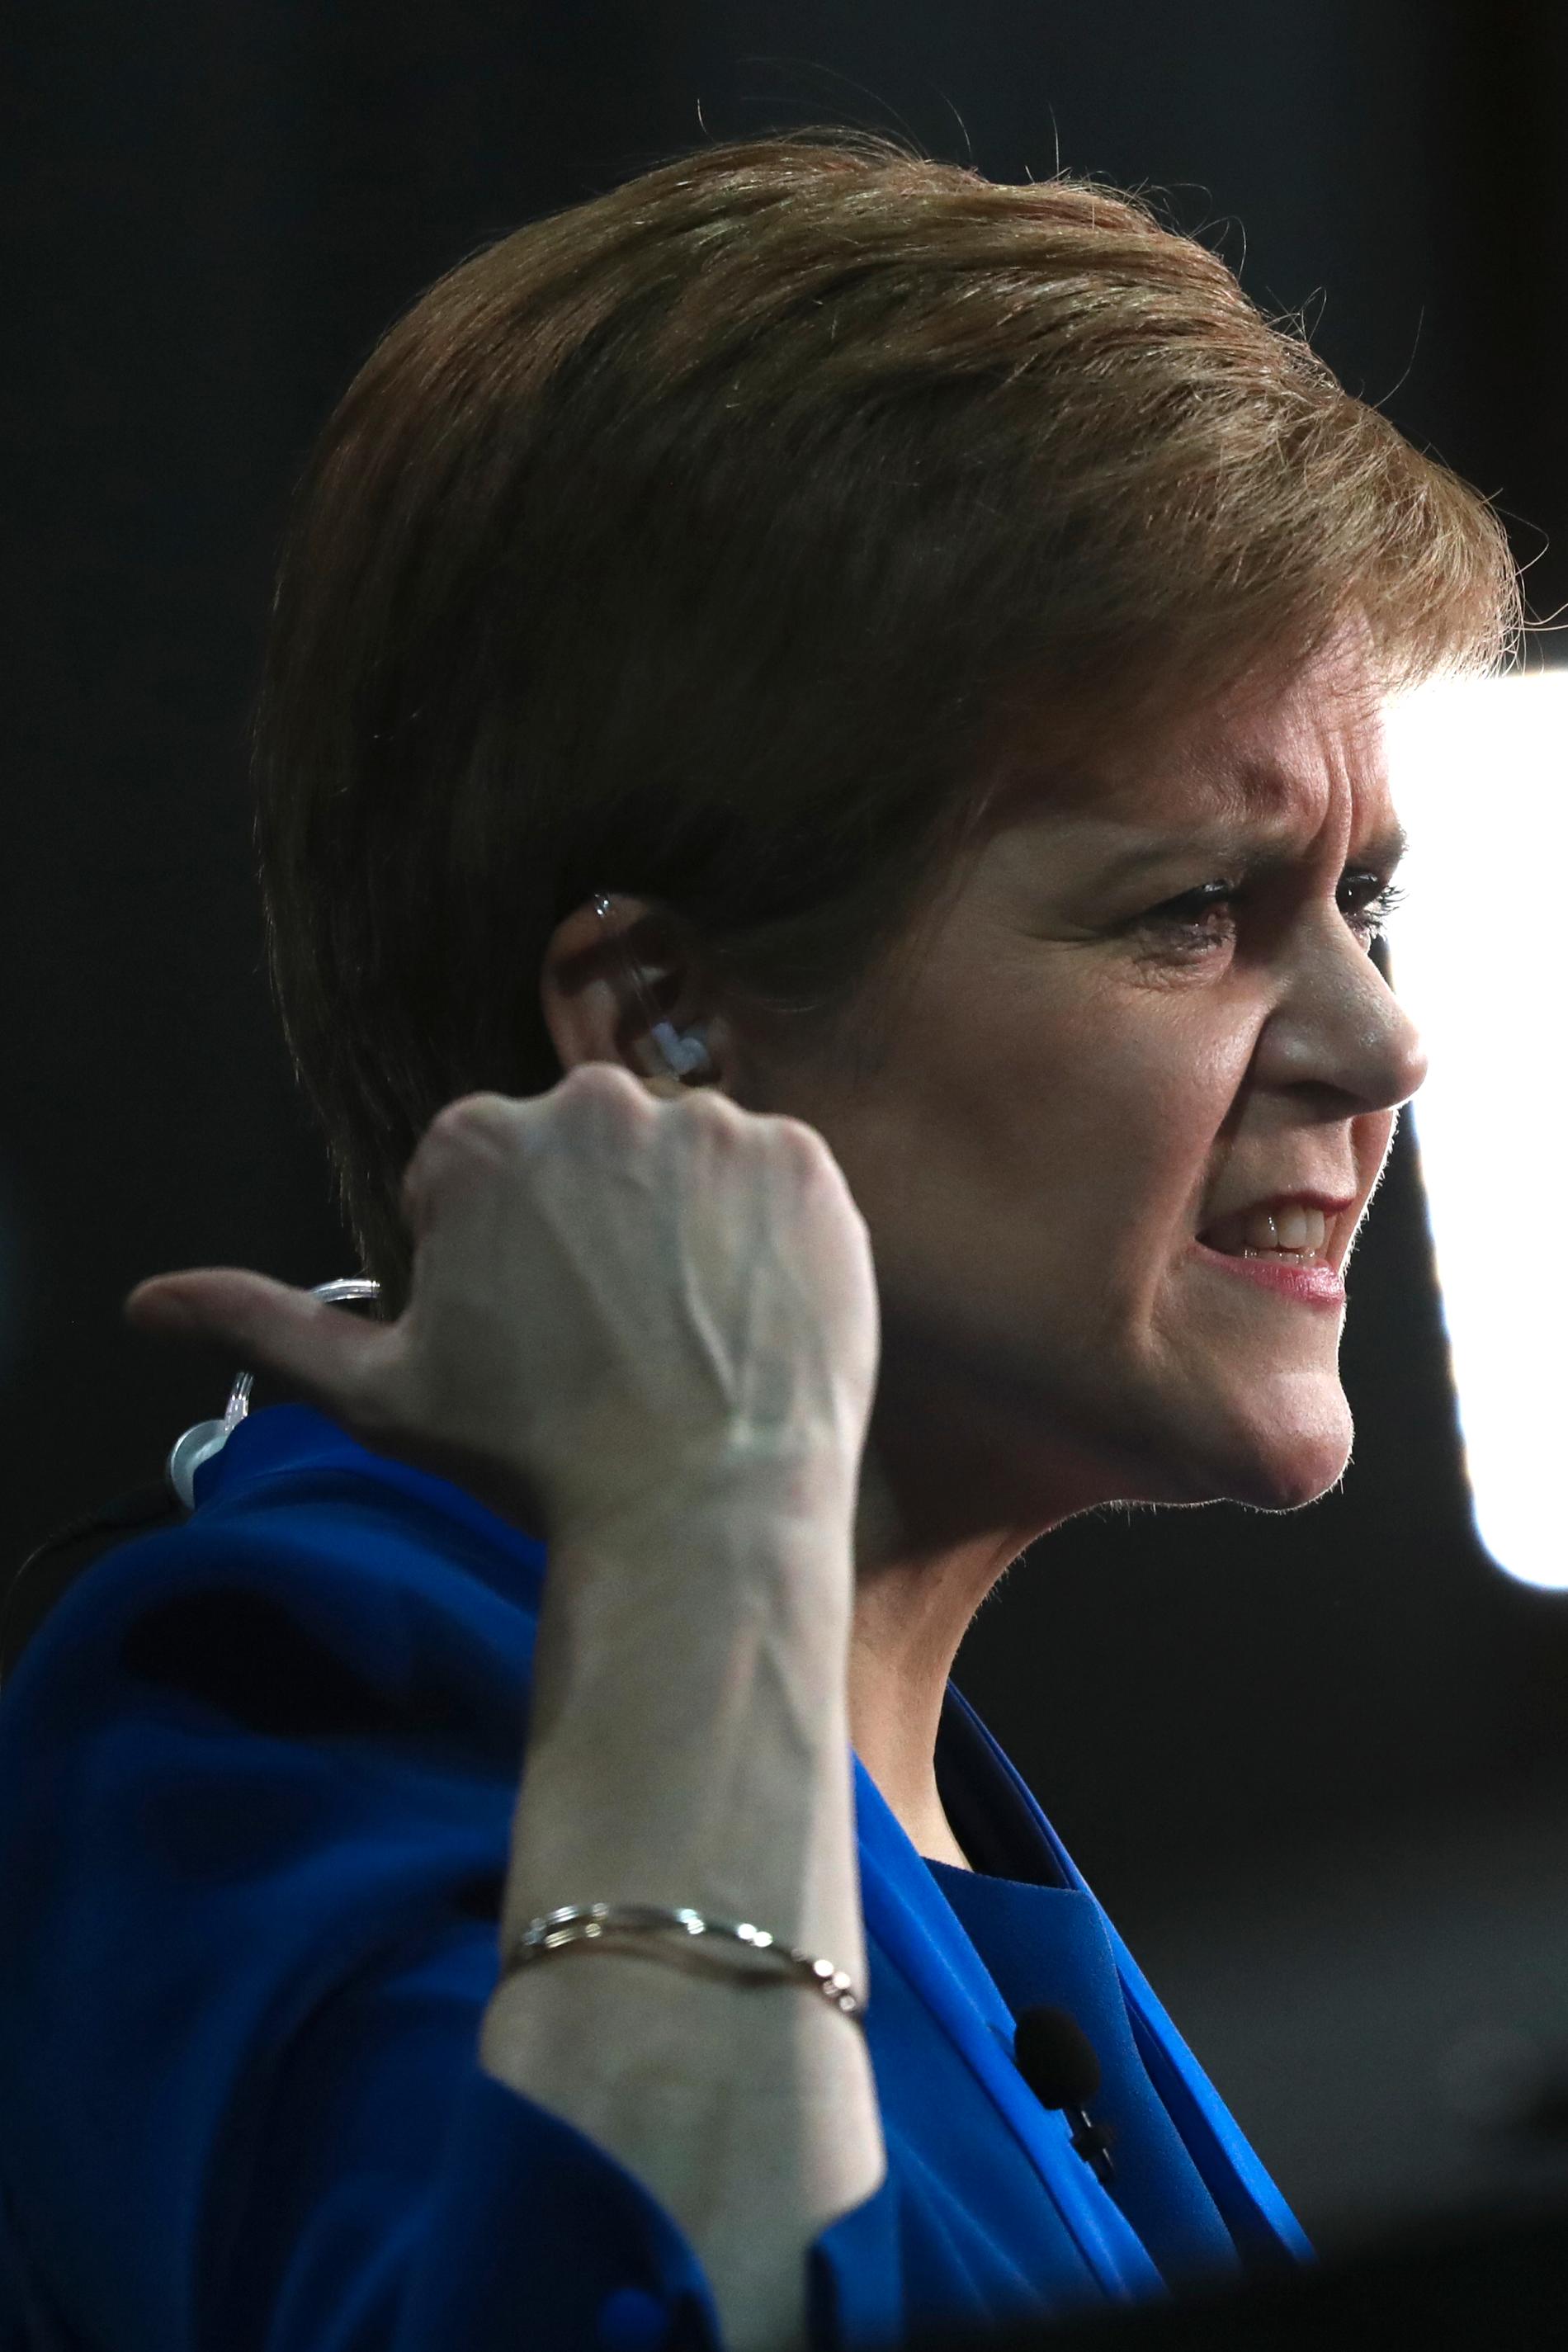 Det skotska nationalistpartiet SNP:s ledare Nicola Sturgeon kräver en ny folkomröstning om skotskt oberoende.